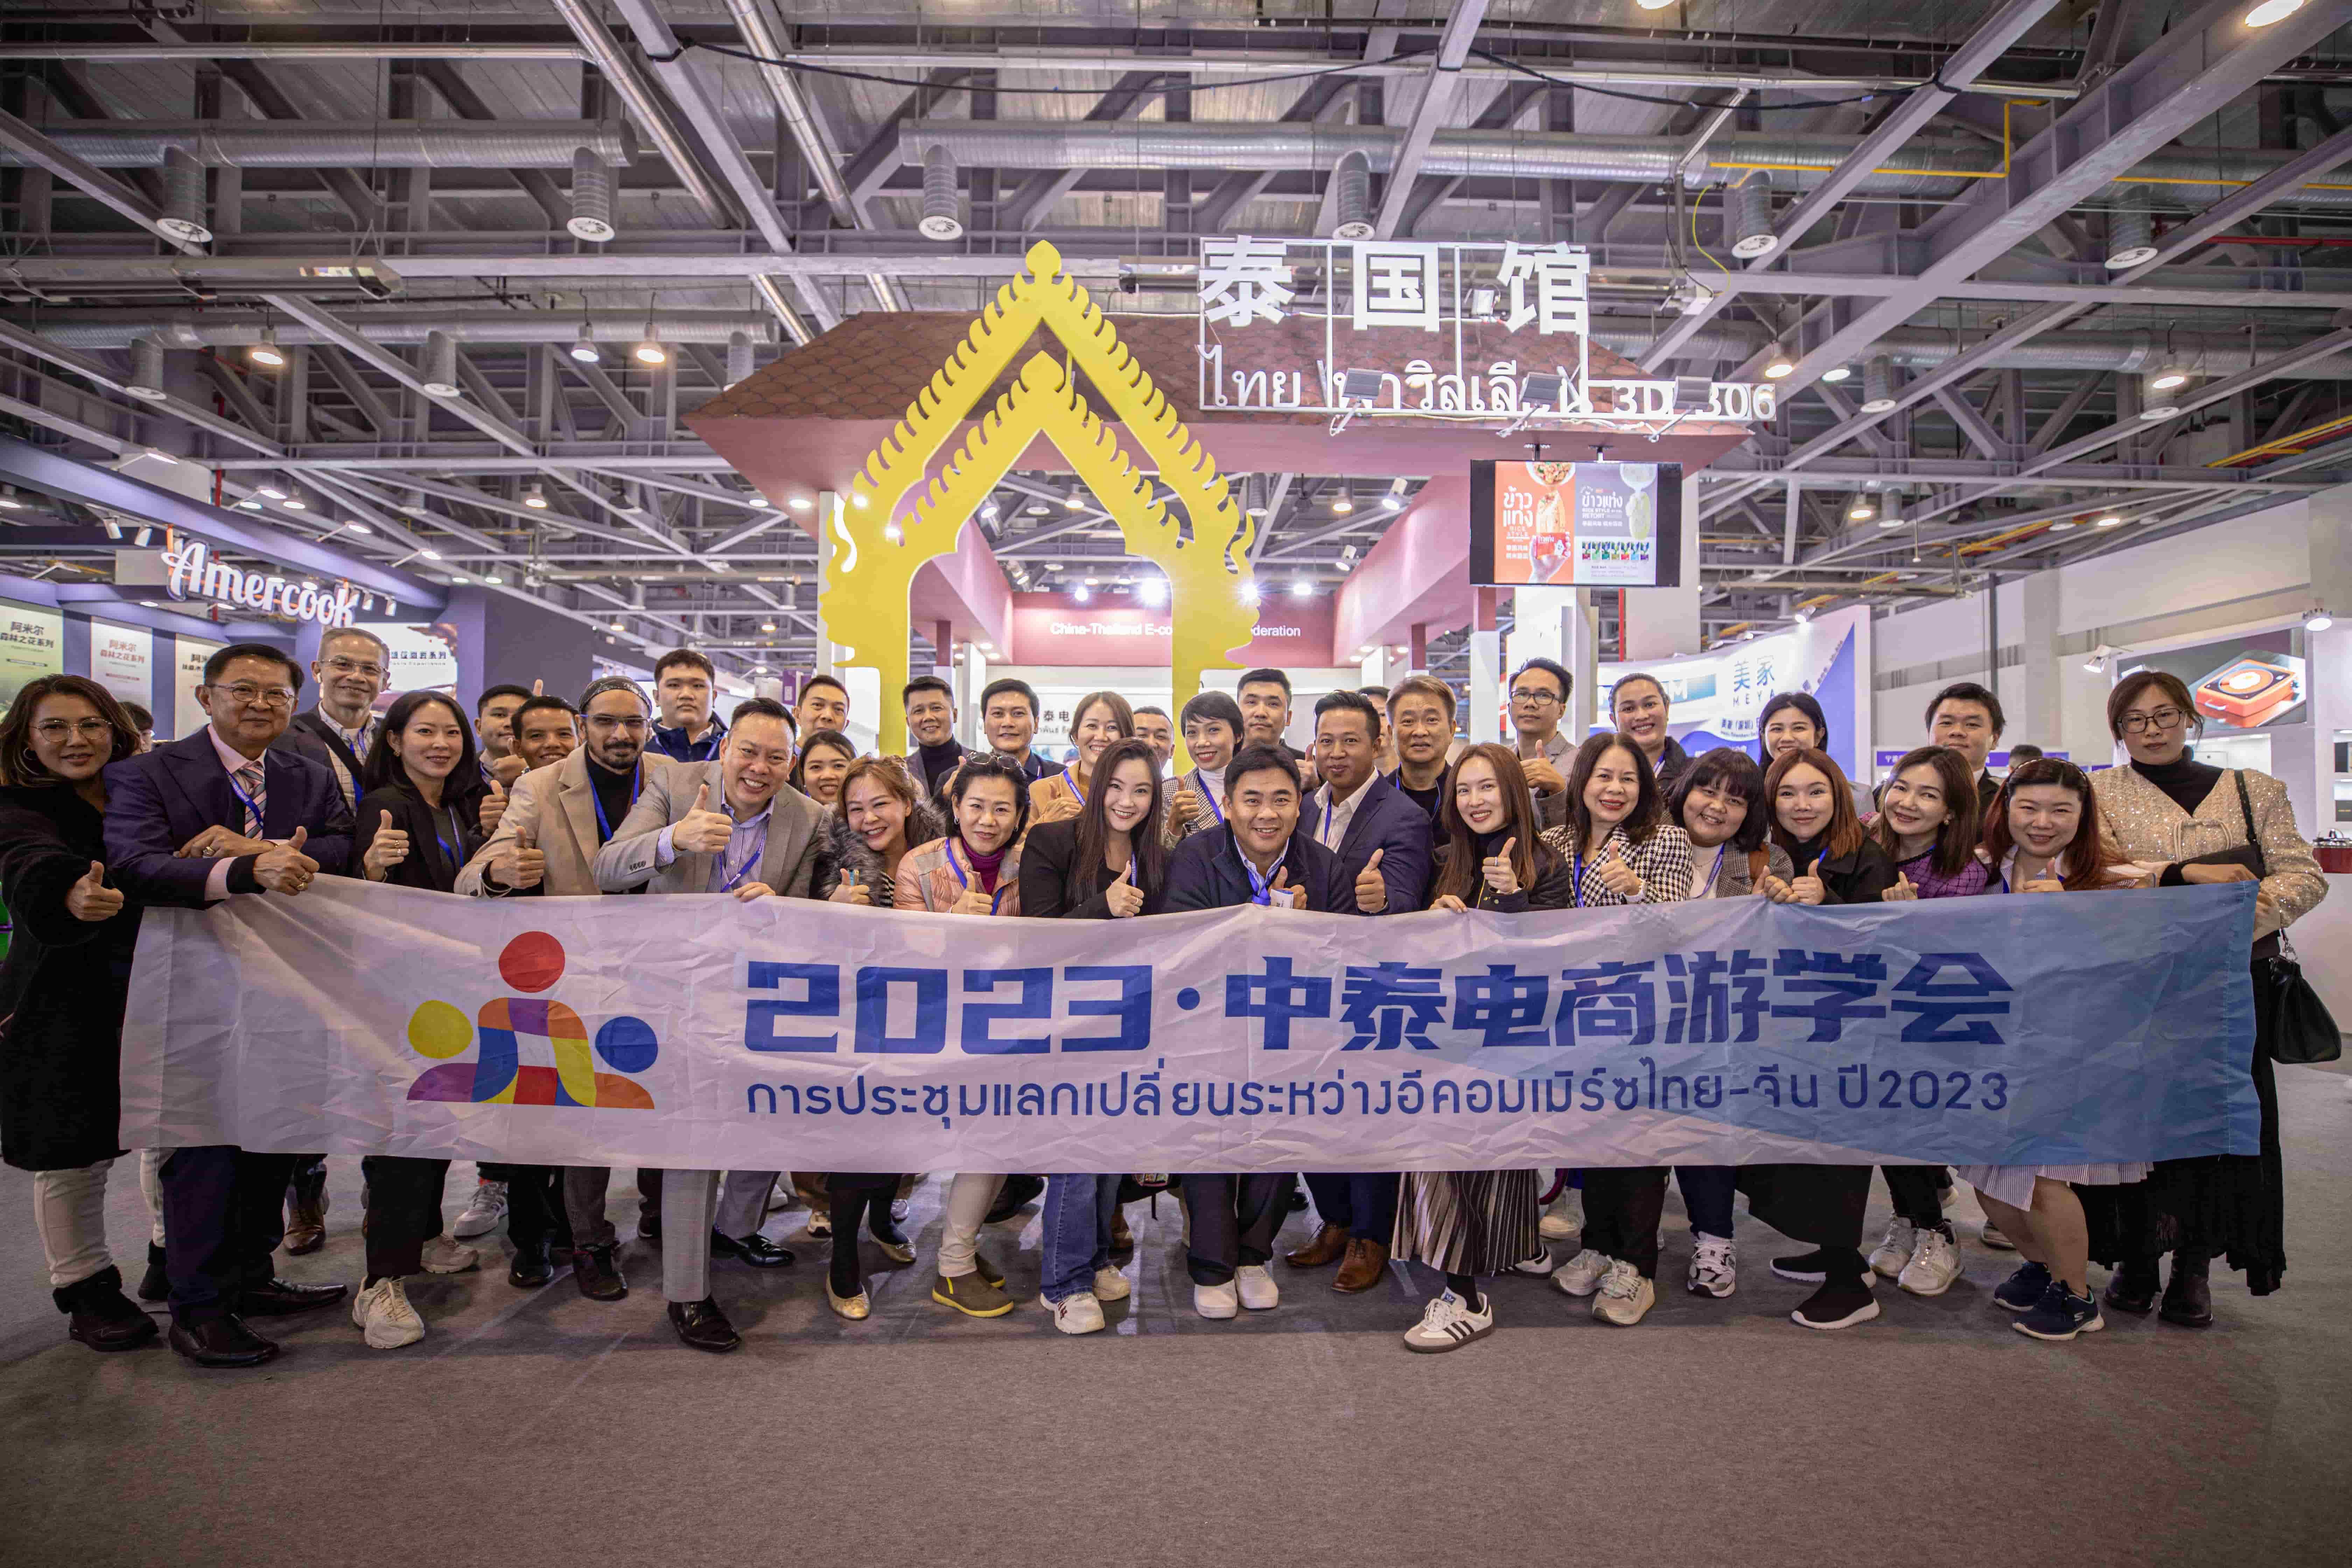 ข่าวความงาม - เกตเวย์ โคออพเพอเรชั่น จับมือพันธมิตรฯ จัดแสดงสินค้าในบูธ Thailand Pavilion  พร้อมร่วมประชุม Hangzhou E-commerce and New Channel Expo ครั้งที่ 4